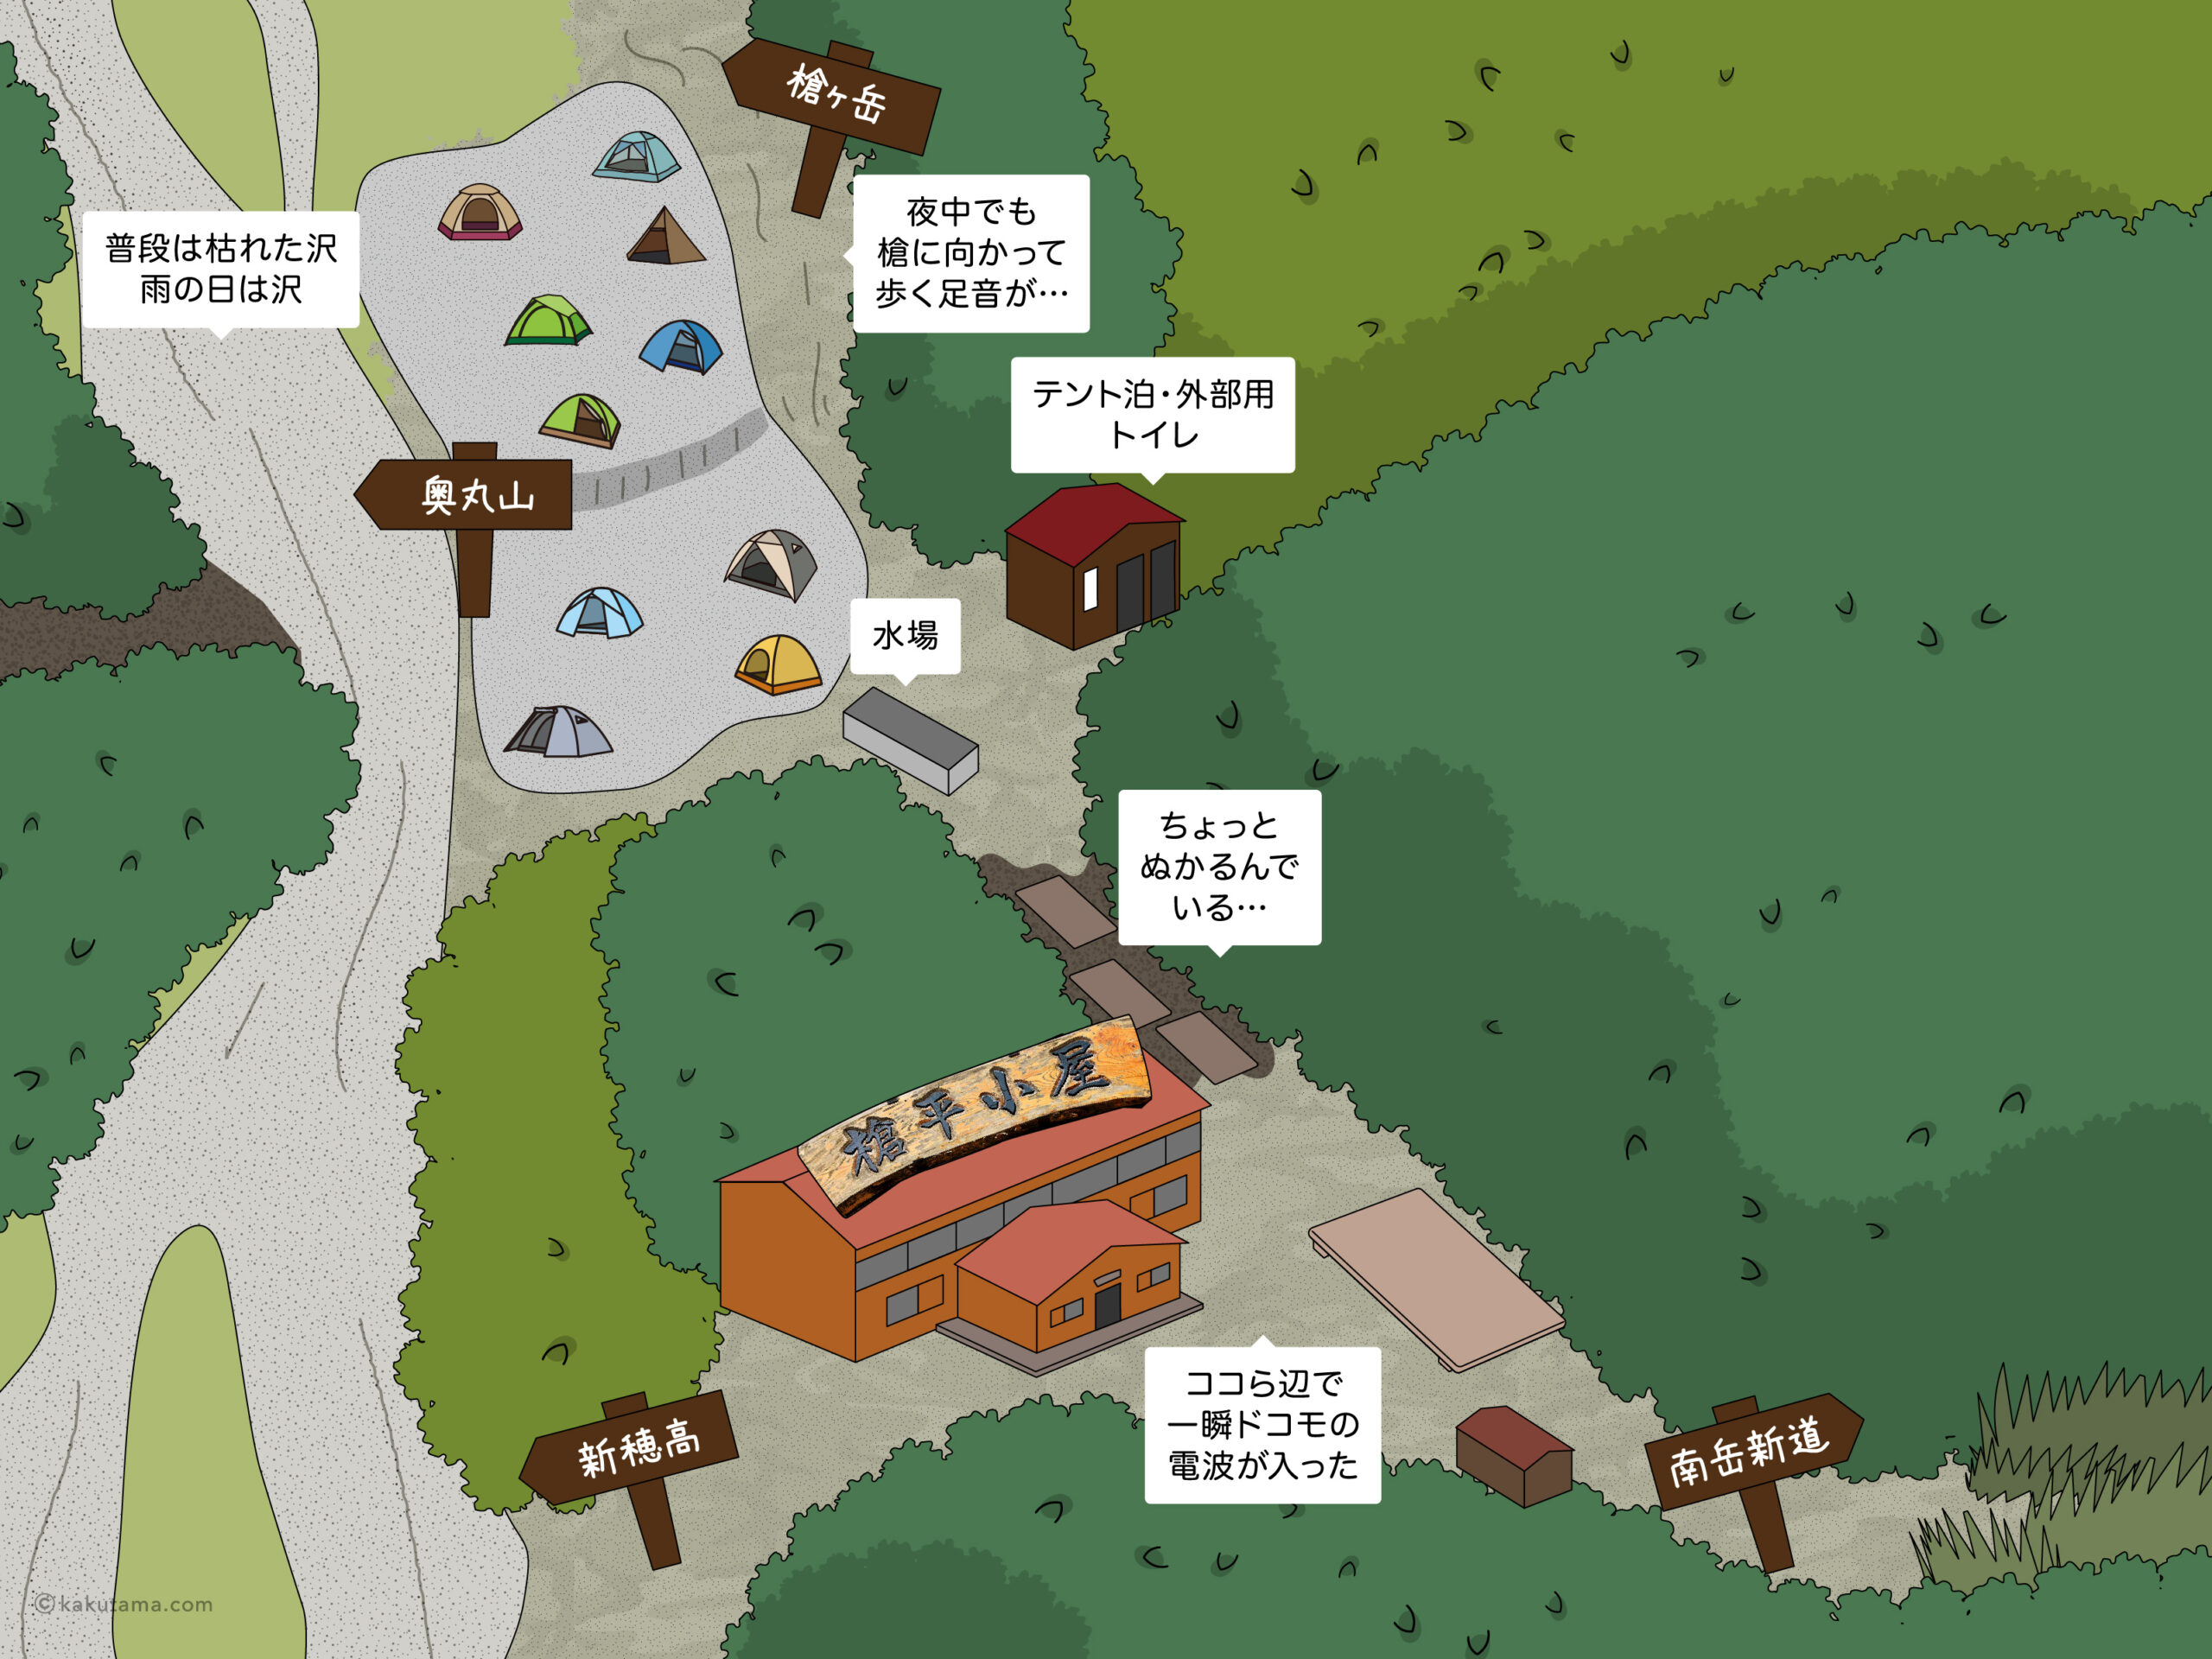 槍平小屋とテント場のイラストマップ